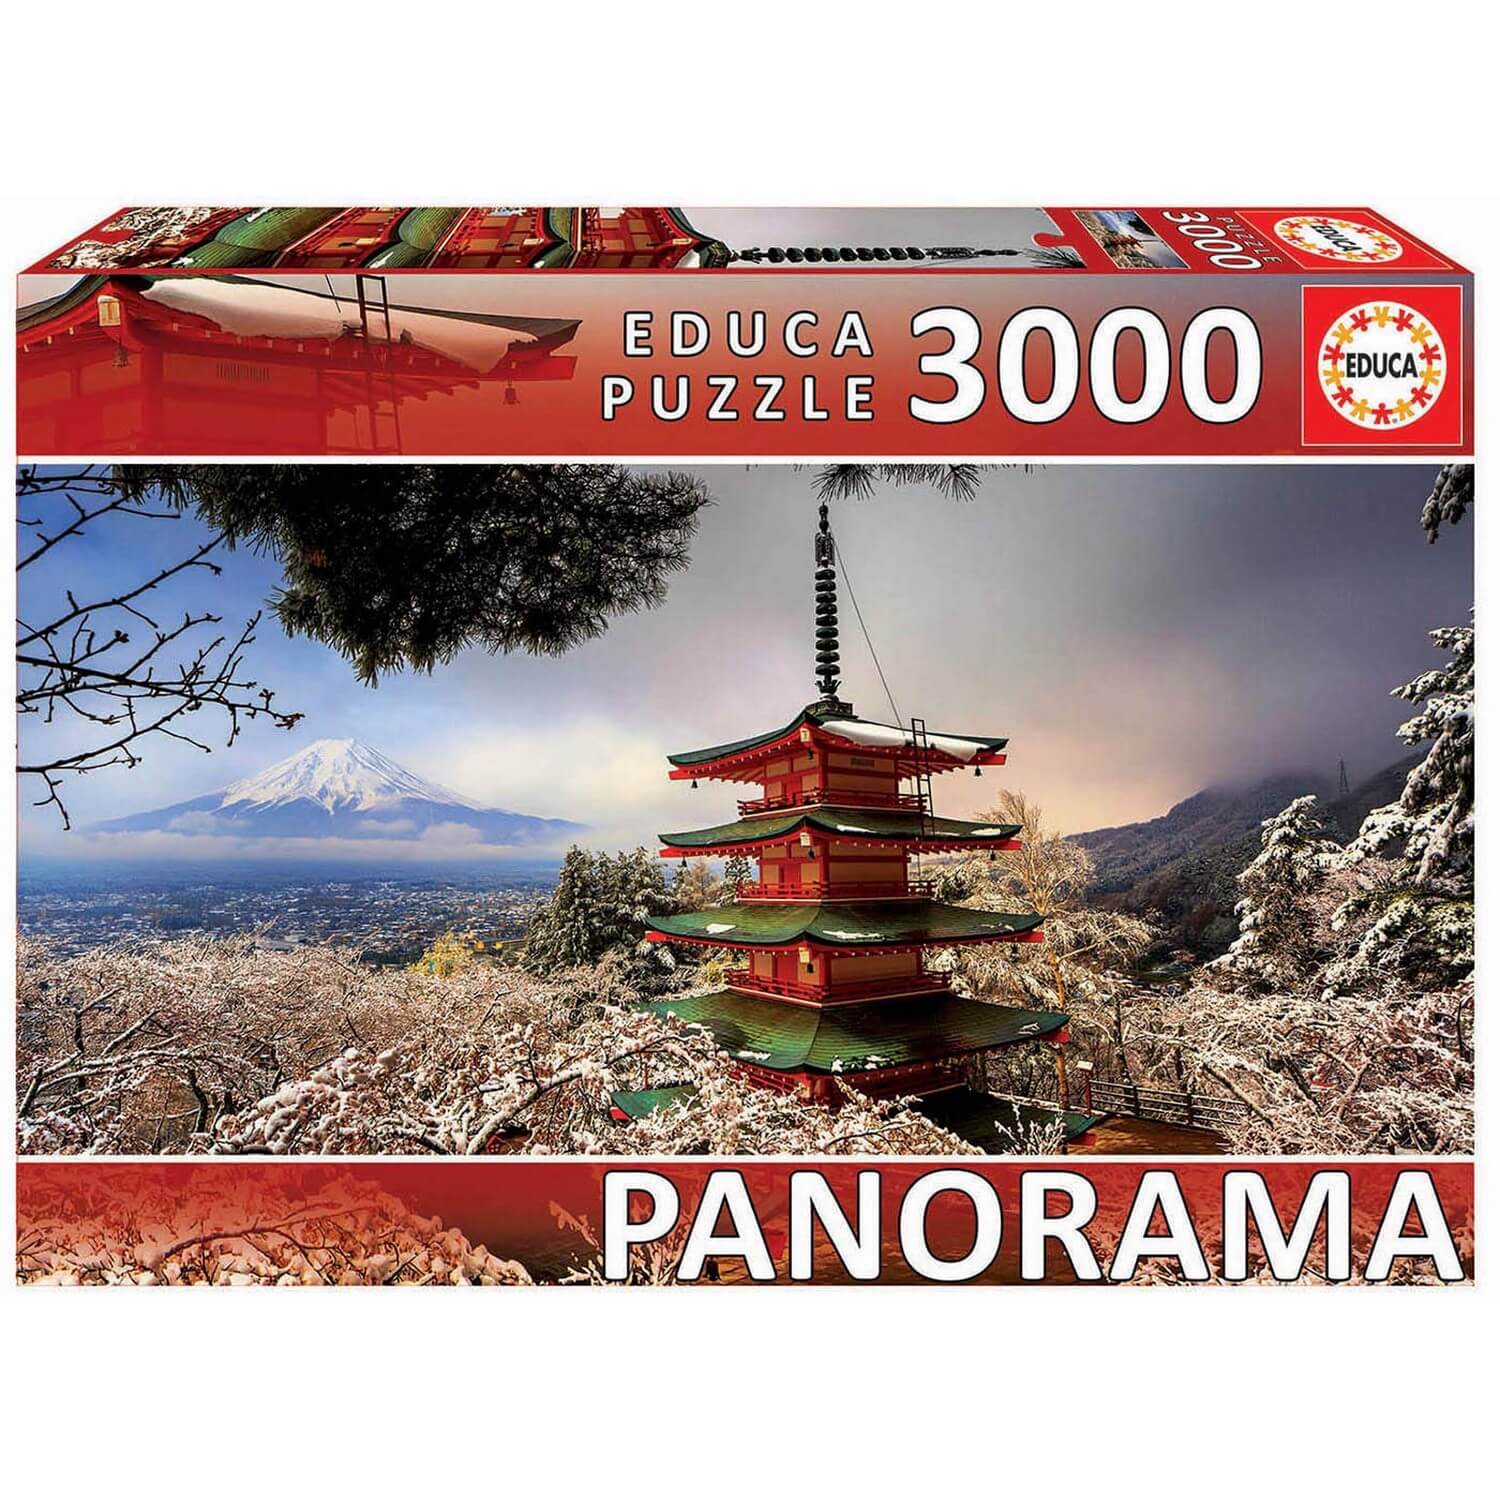 Puzzle Japanese Temple Grafika-F-32253 500 pièces Puzzles - Pays